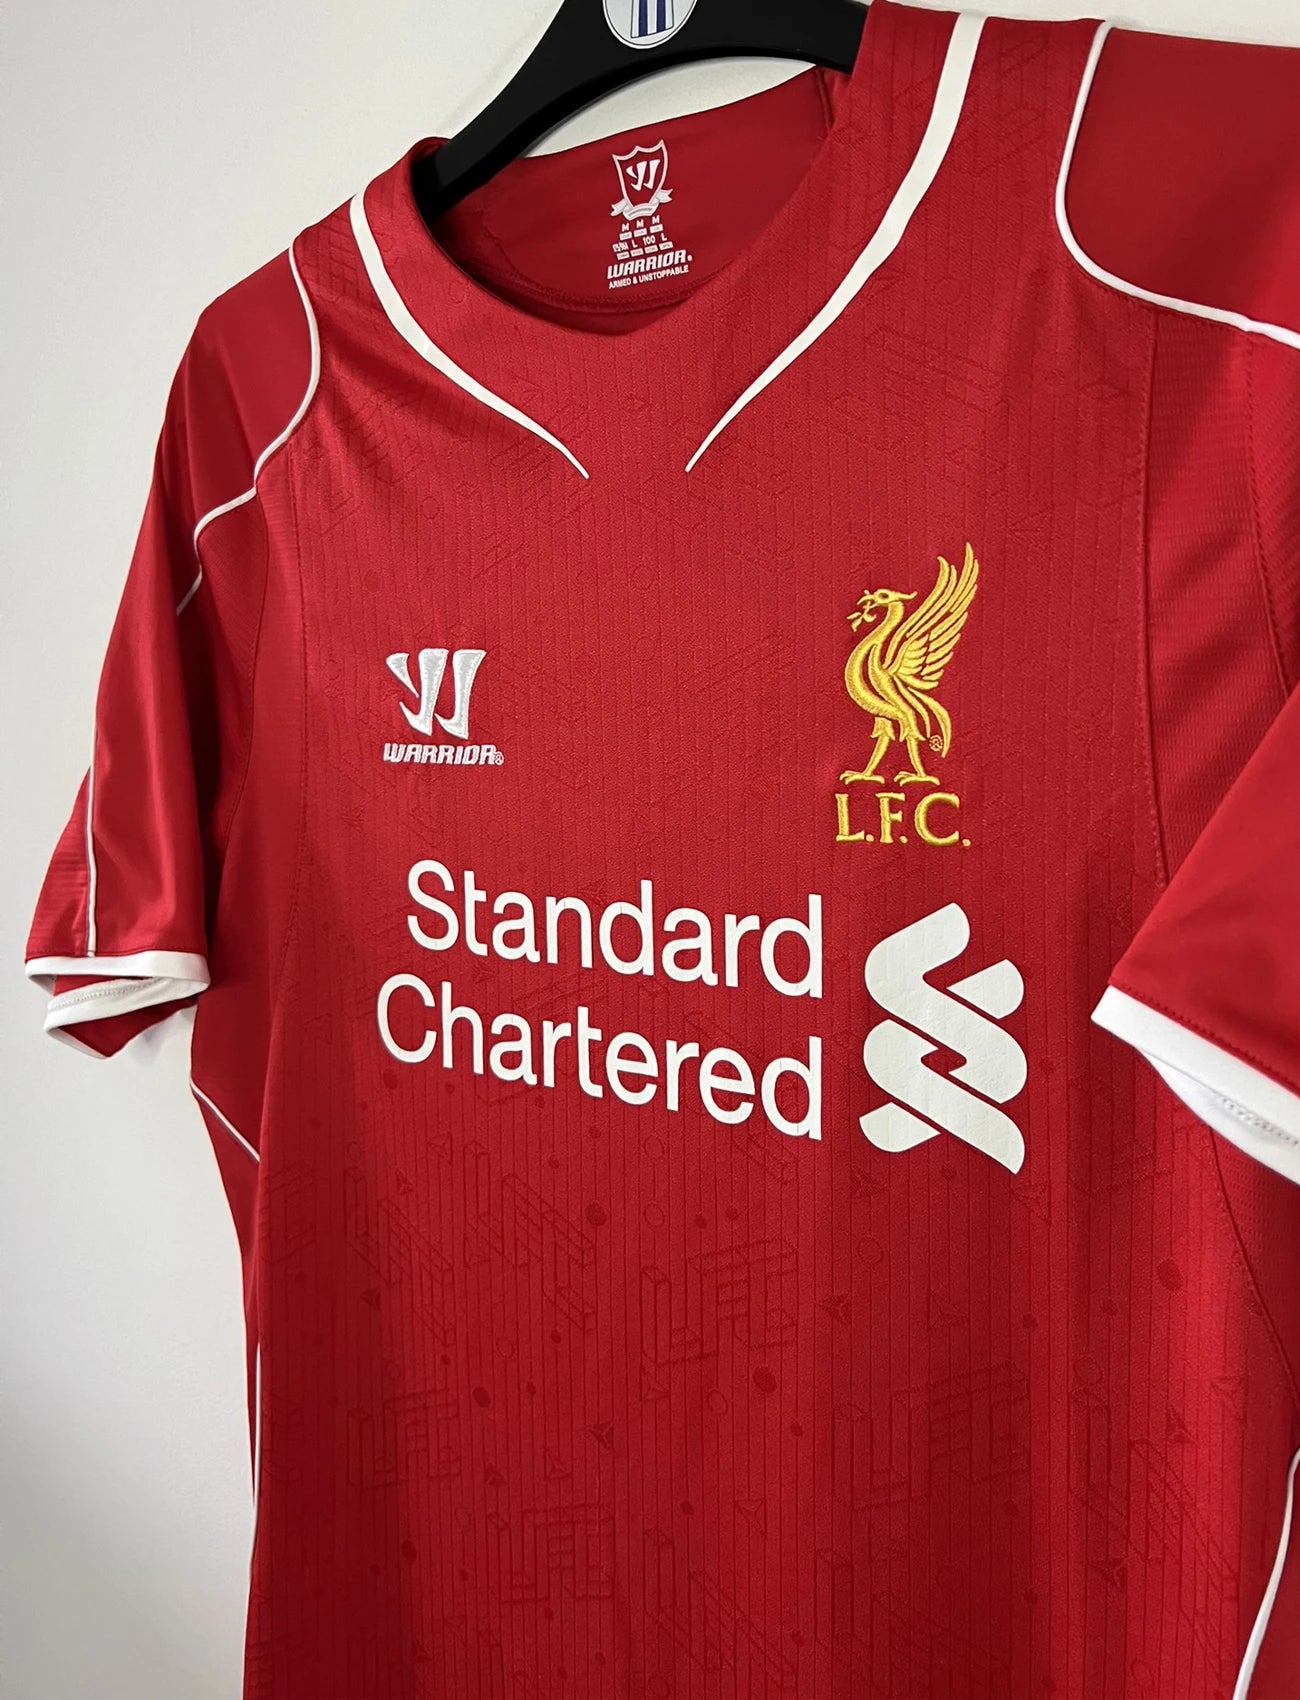 Maillot de foot rétro/vintage authentique rouge warrior Liverpool domicile 2014-2015 Balotelli flocage